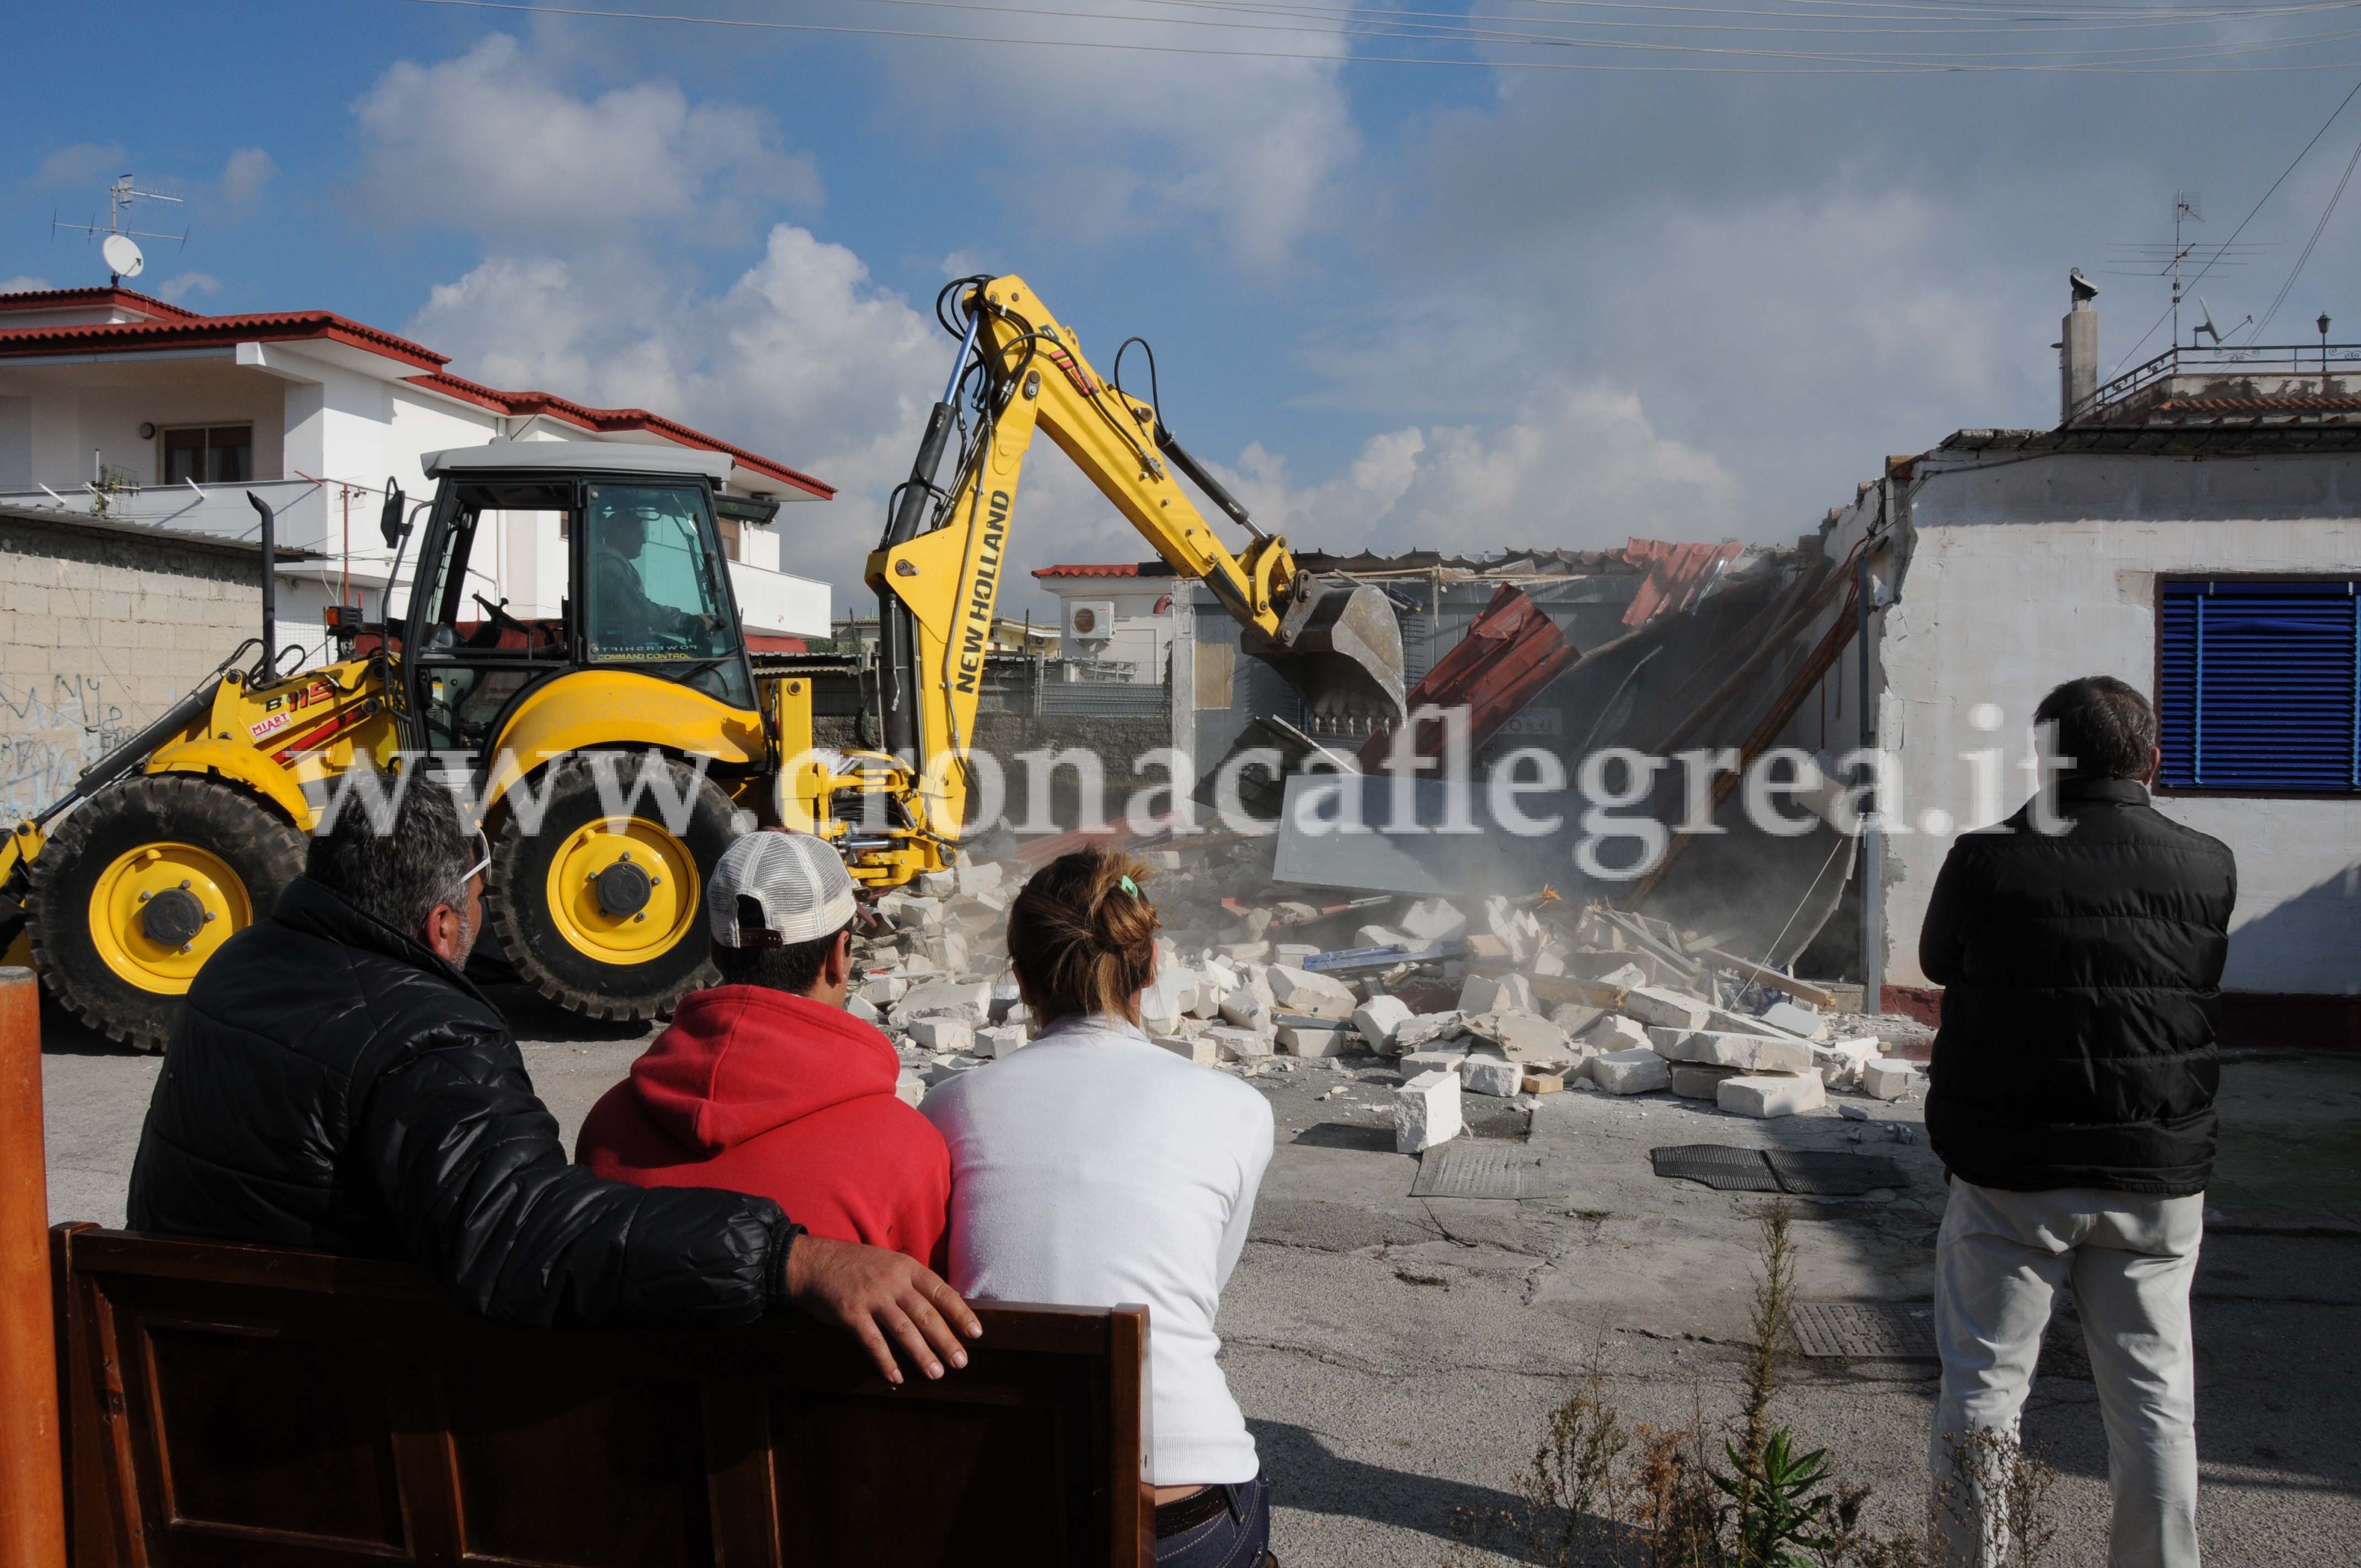 Ruspe “buone” a Bacoli, dopo 21 anni demoliti i campi container – LE FOTO